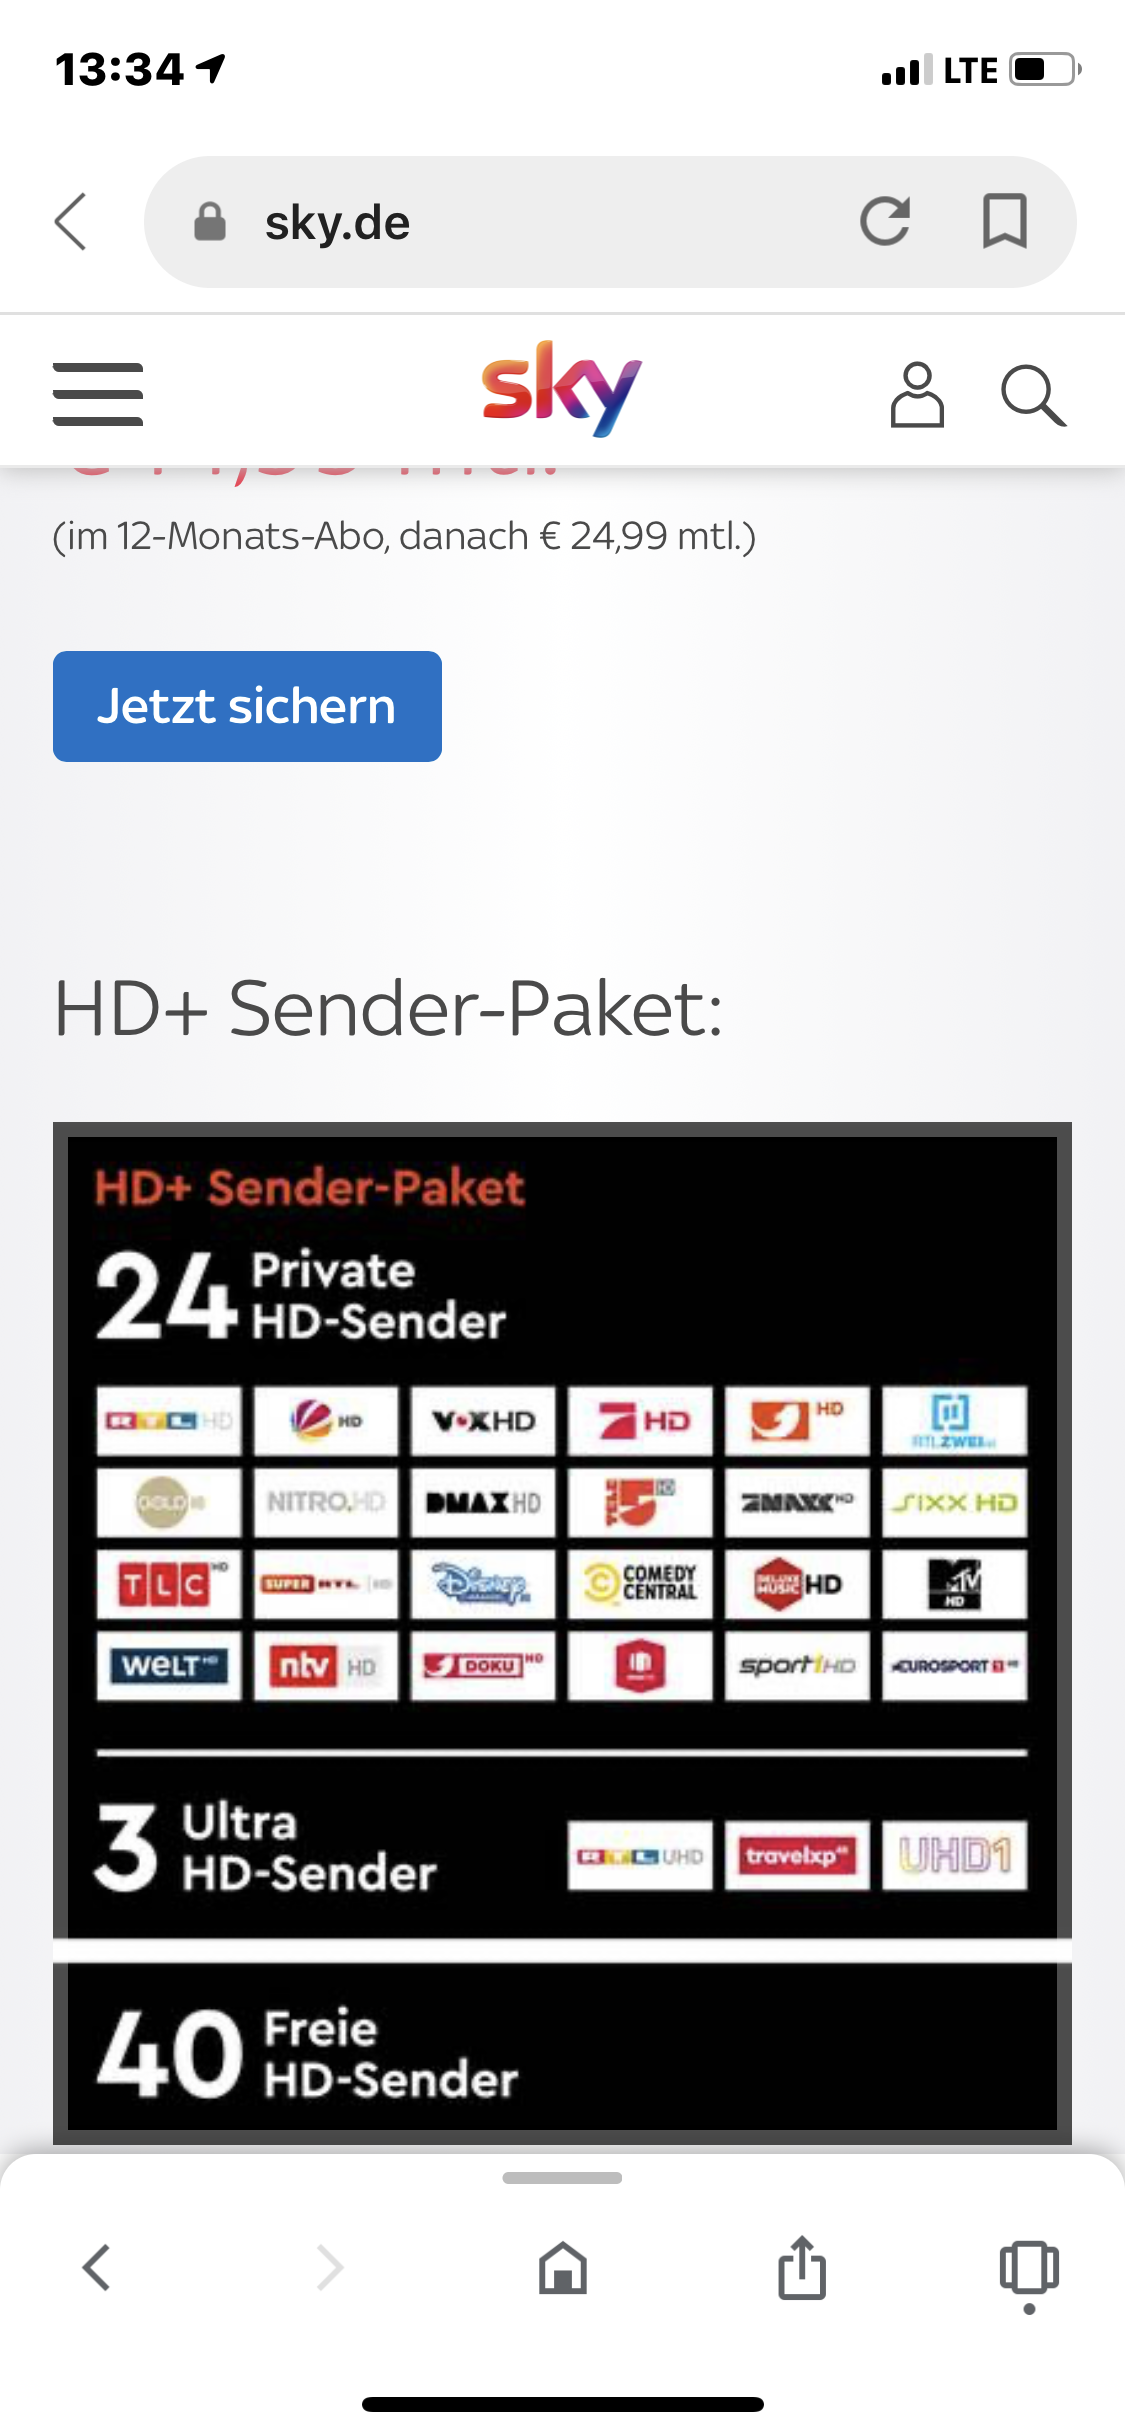 Kabel Eins Doku HD startet am 17. Januar bei HD+ - Sky Community